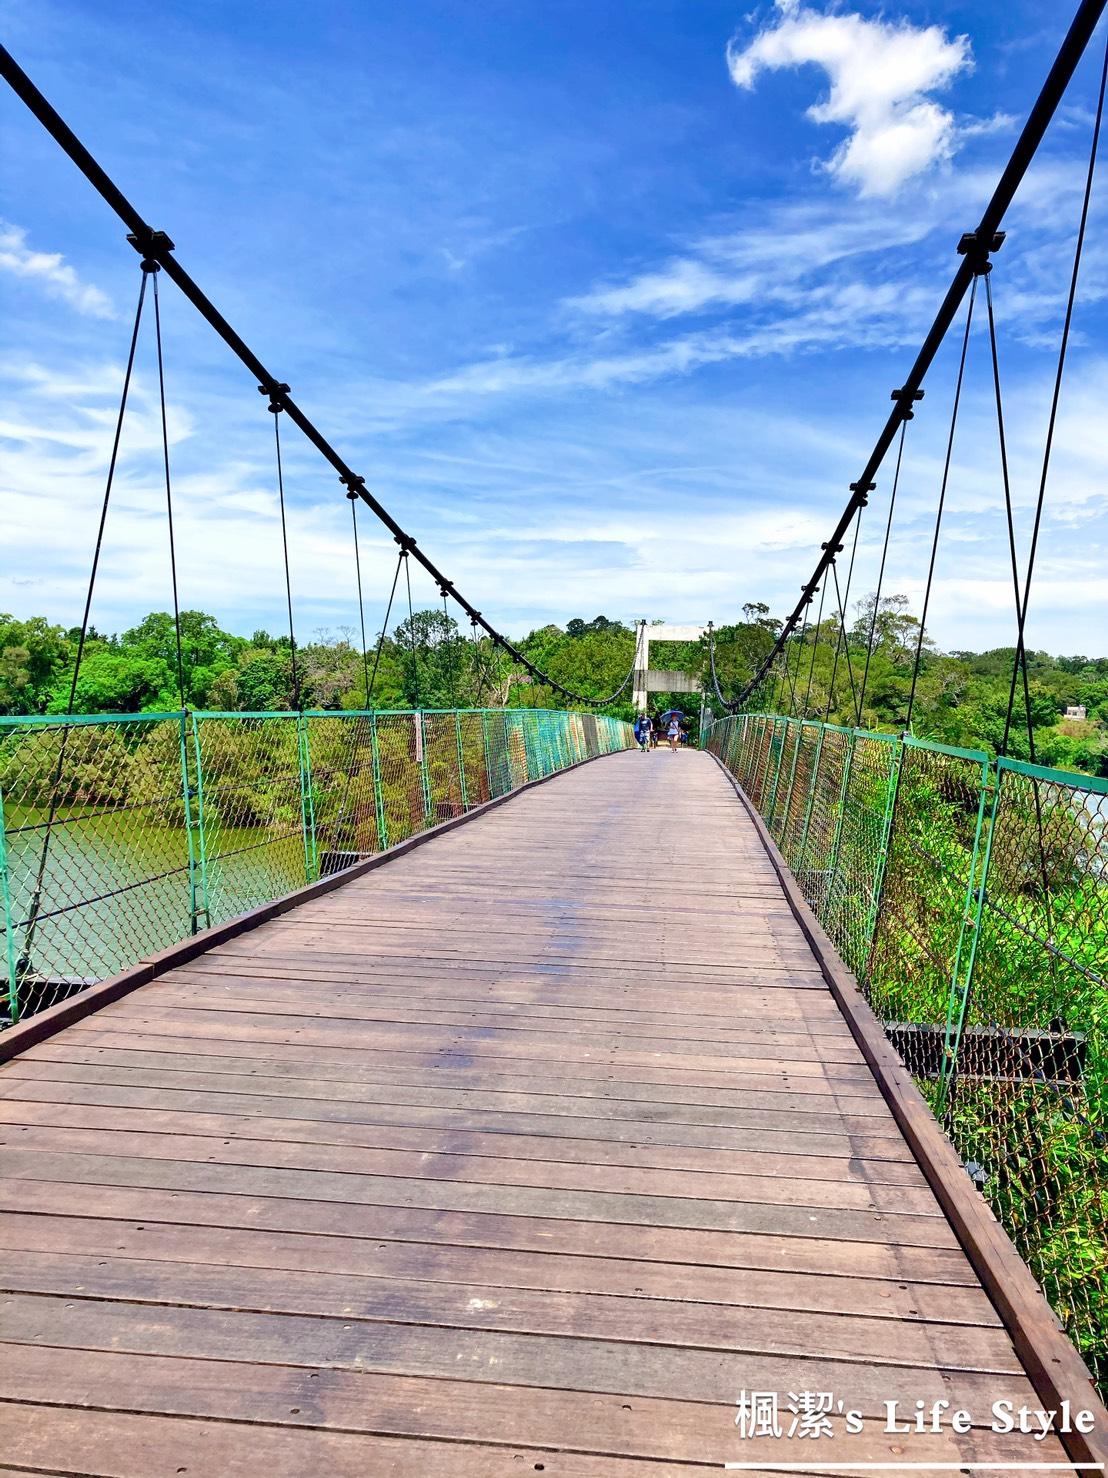 →進入日新島前會先經過這座美麗的吊橋，吊橋兩旁包圍著樹及美麗的湖水，天氣晴朗時，真的是絕美的取景之地~